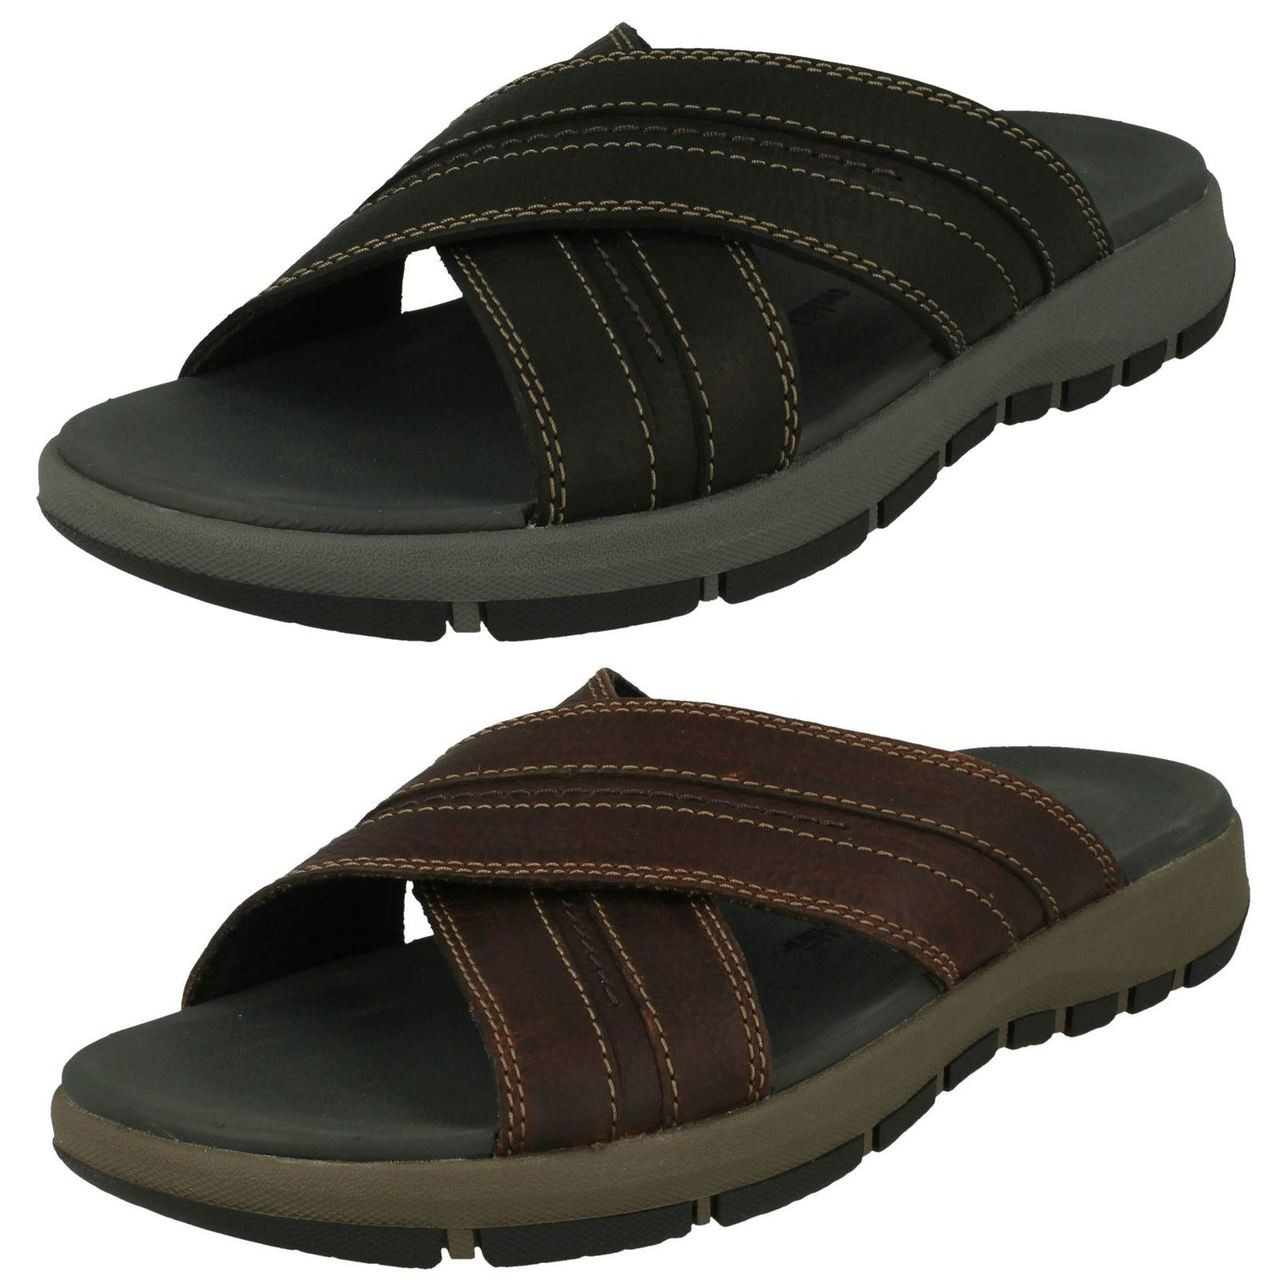 clarks sandals discount code